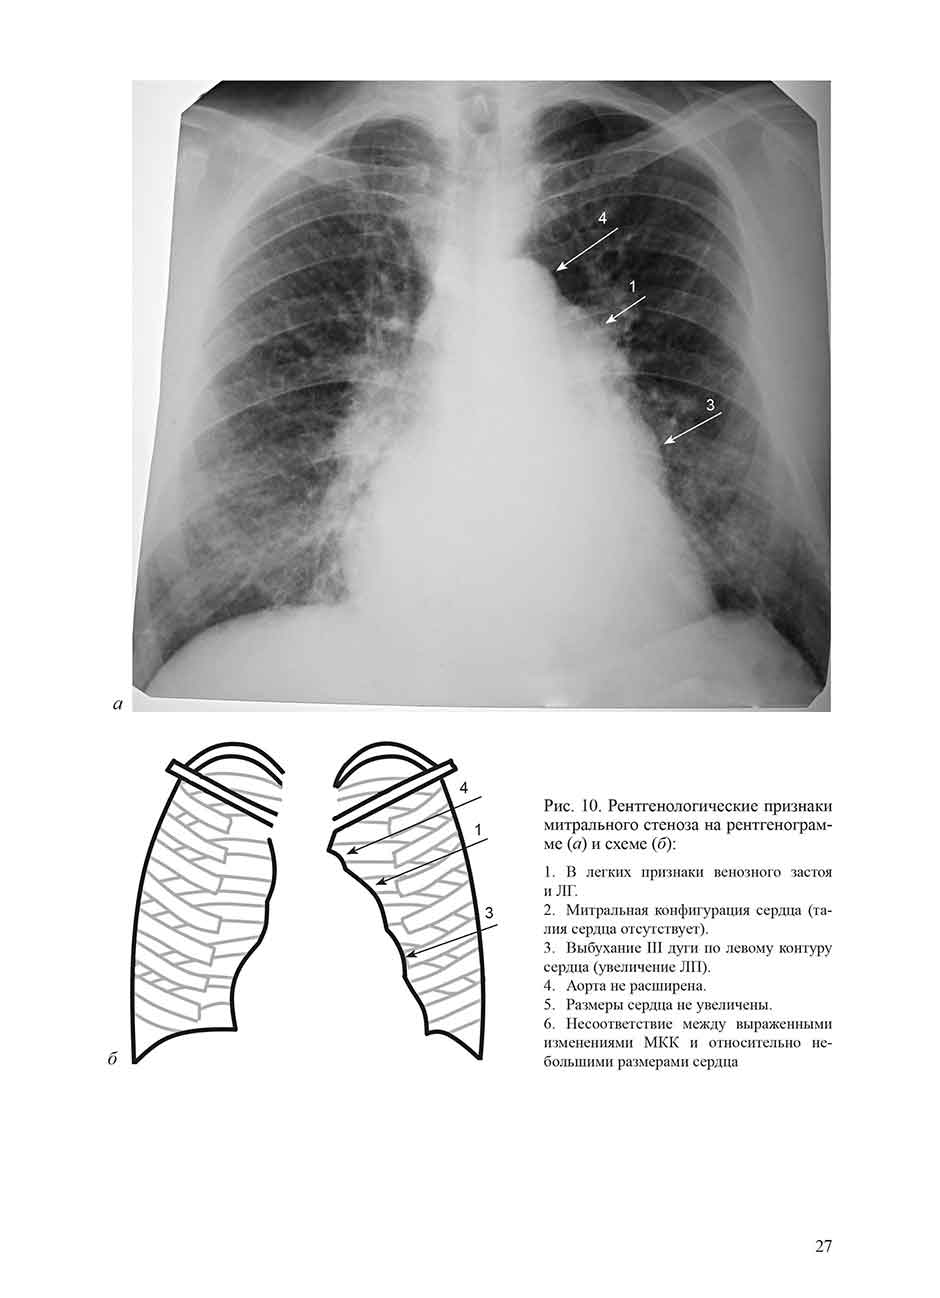 Рентгенологические признаки митрального стеноза на рентгенограмме (а) и схеме (б)